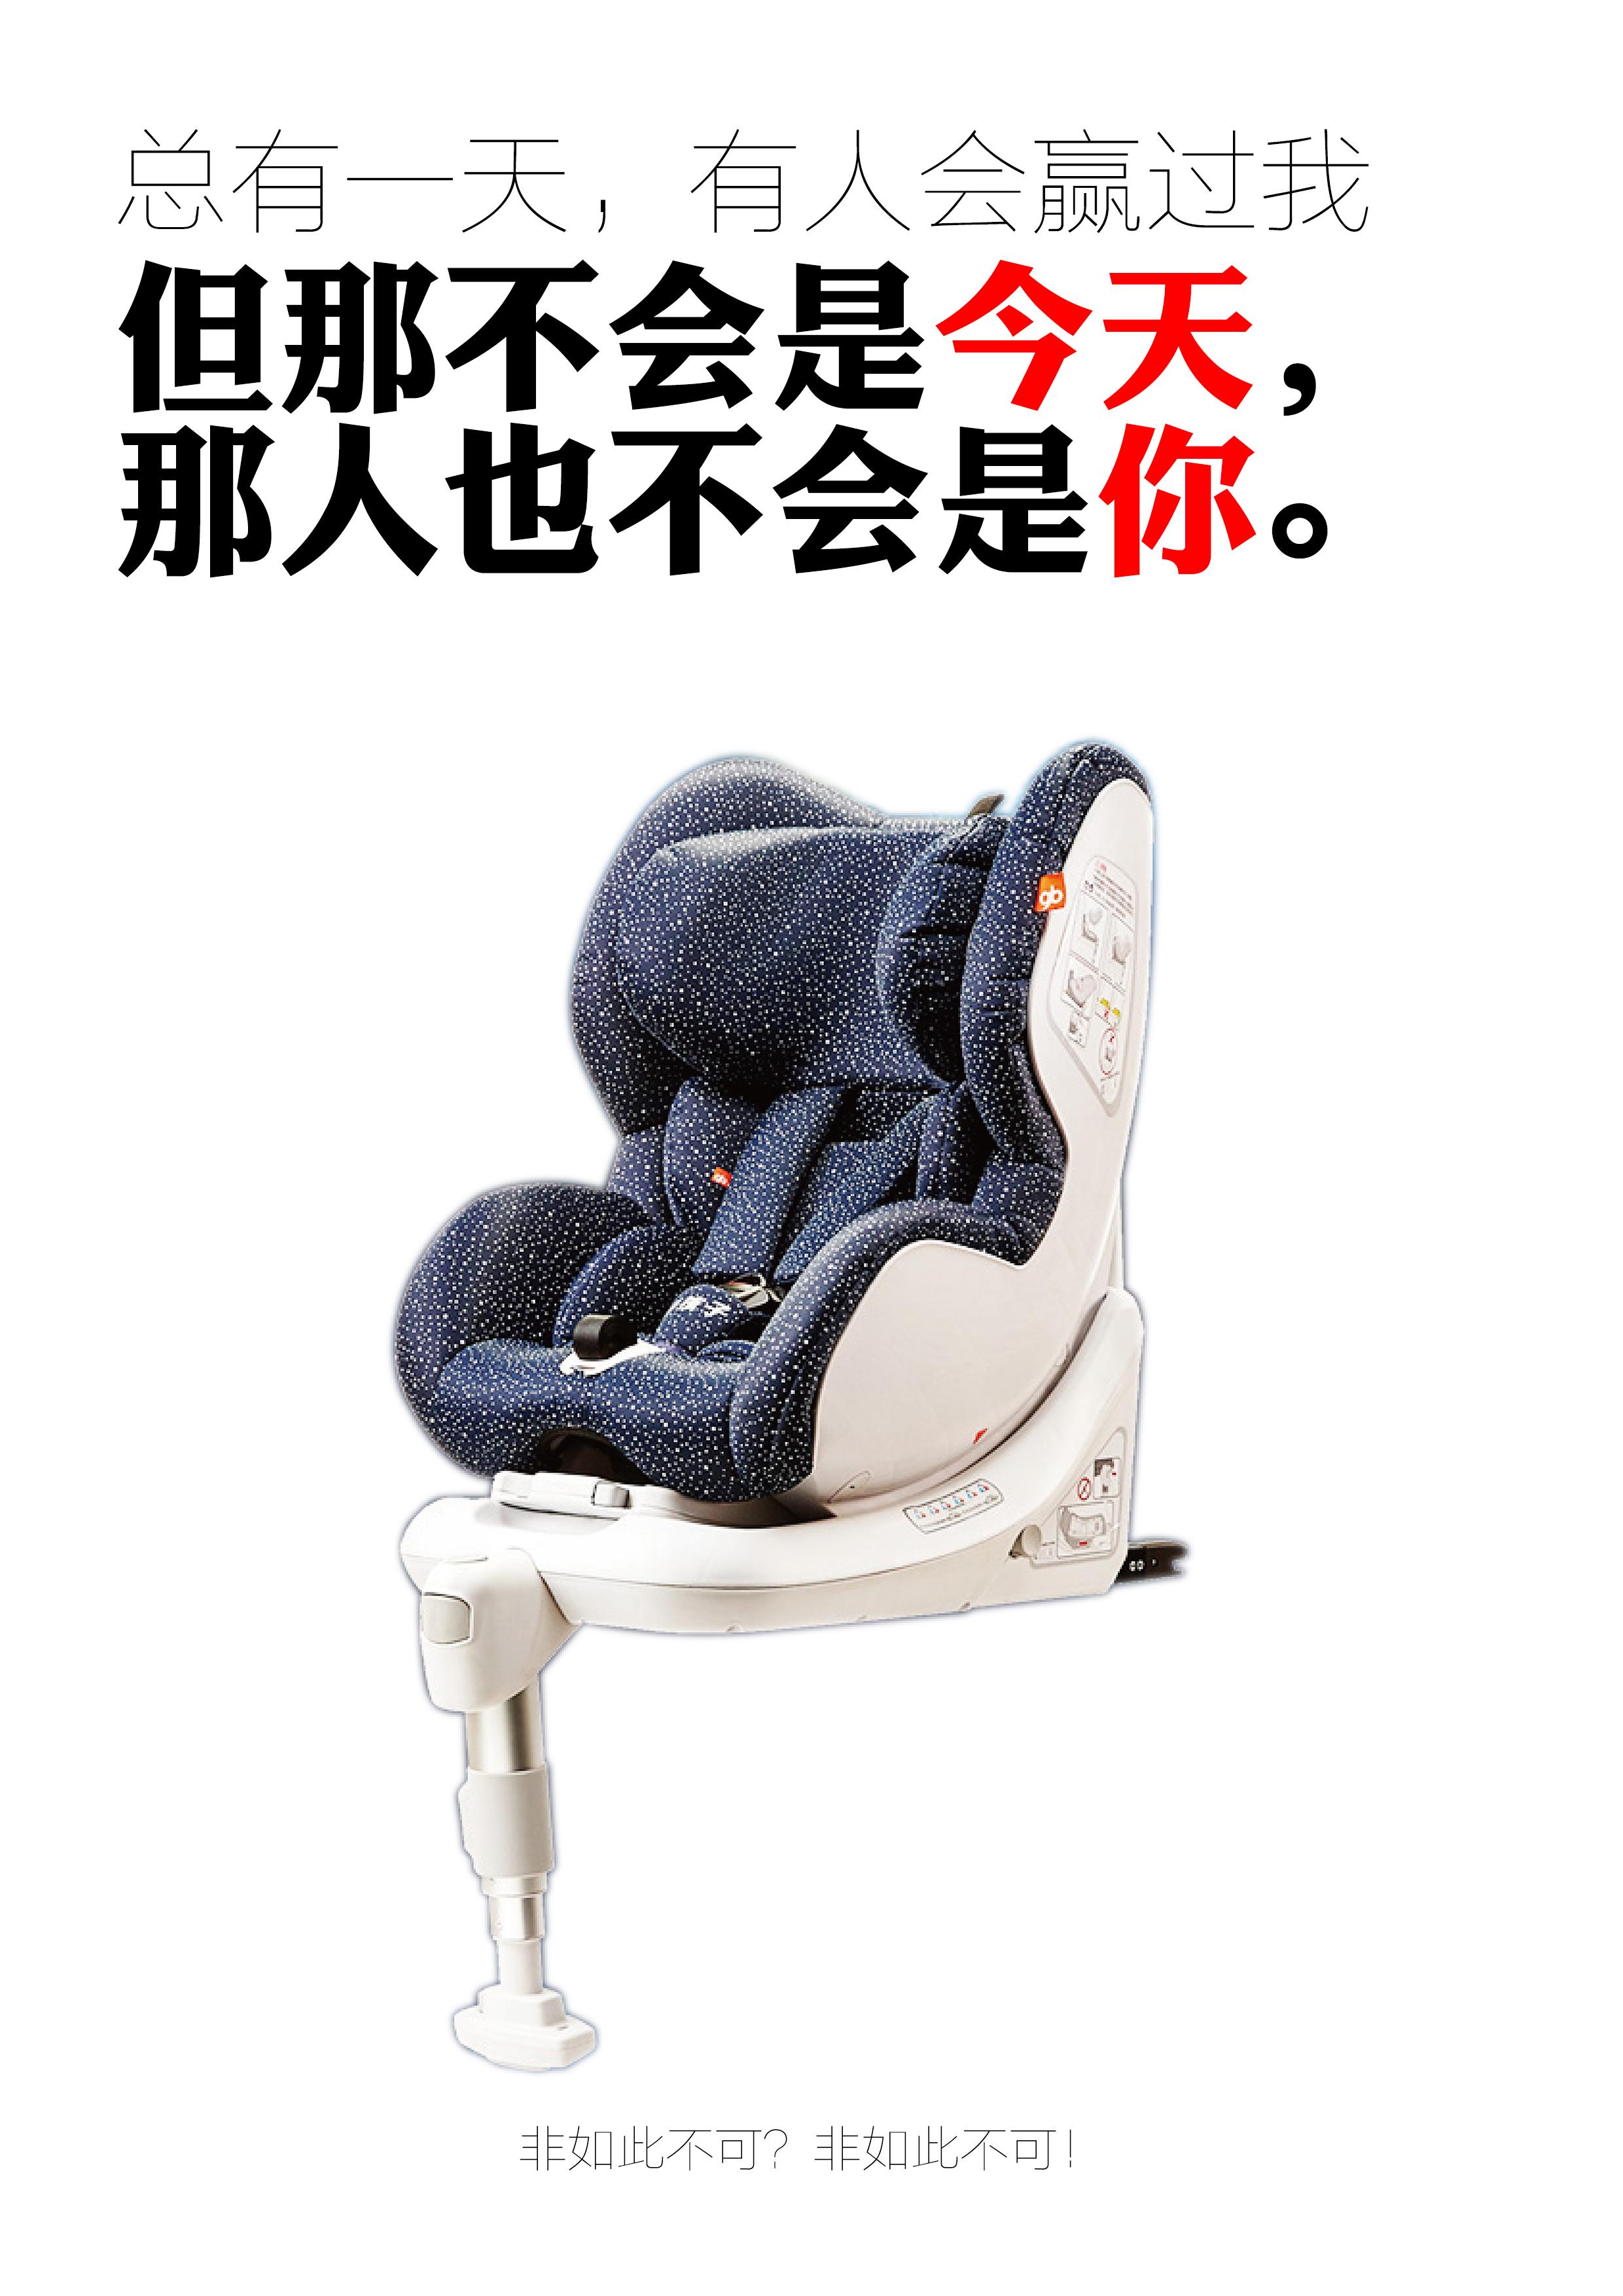 安全座椅宣传图图片